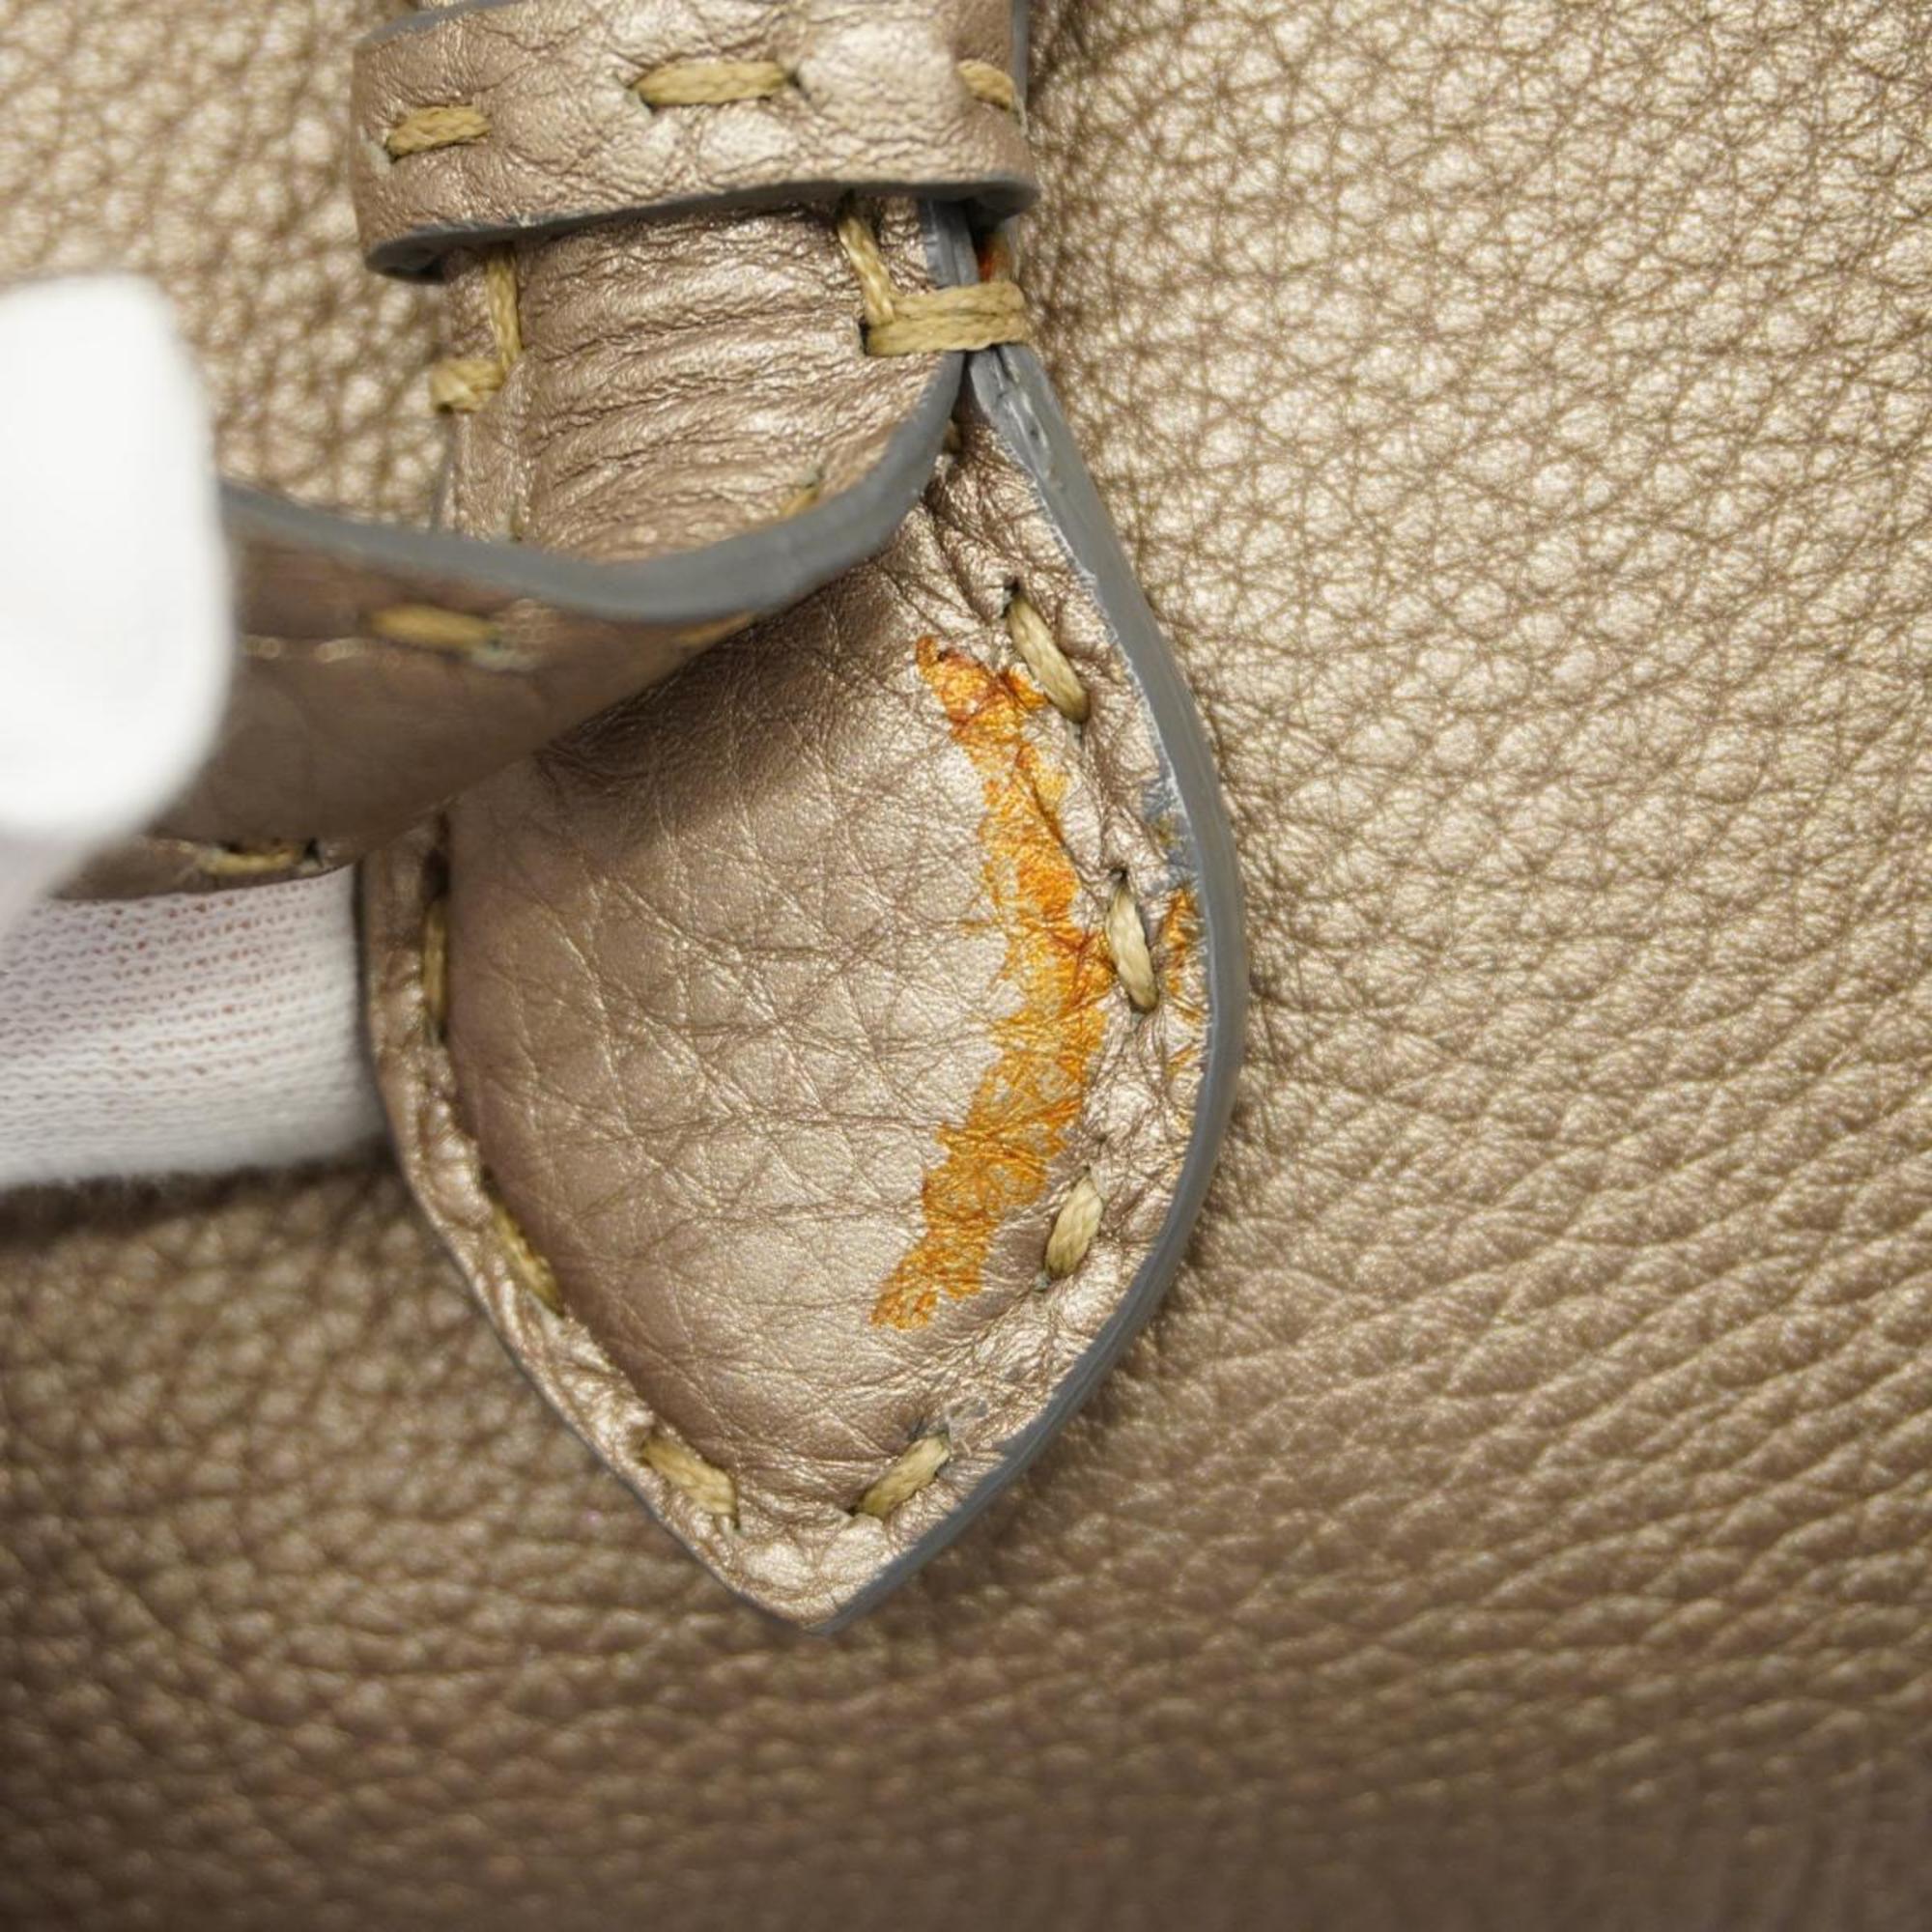 Fendi handbag Selleria leather beige for women